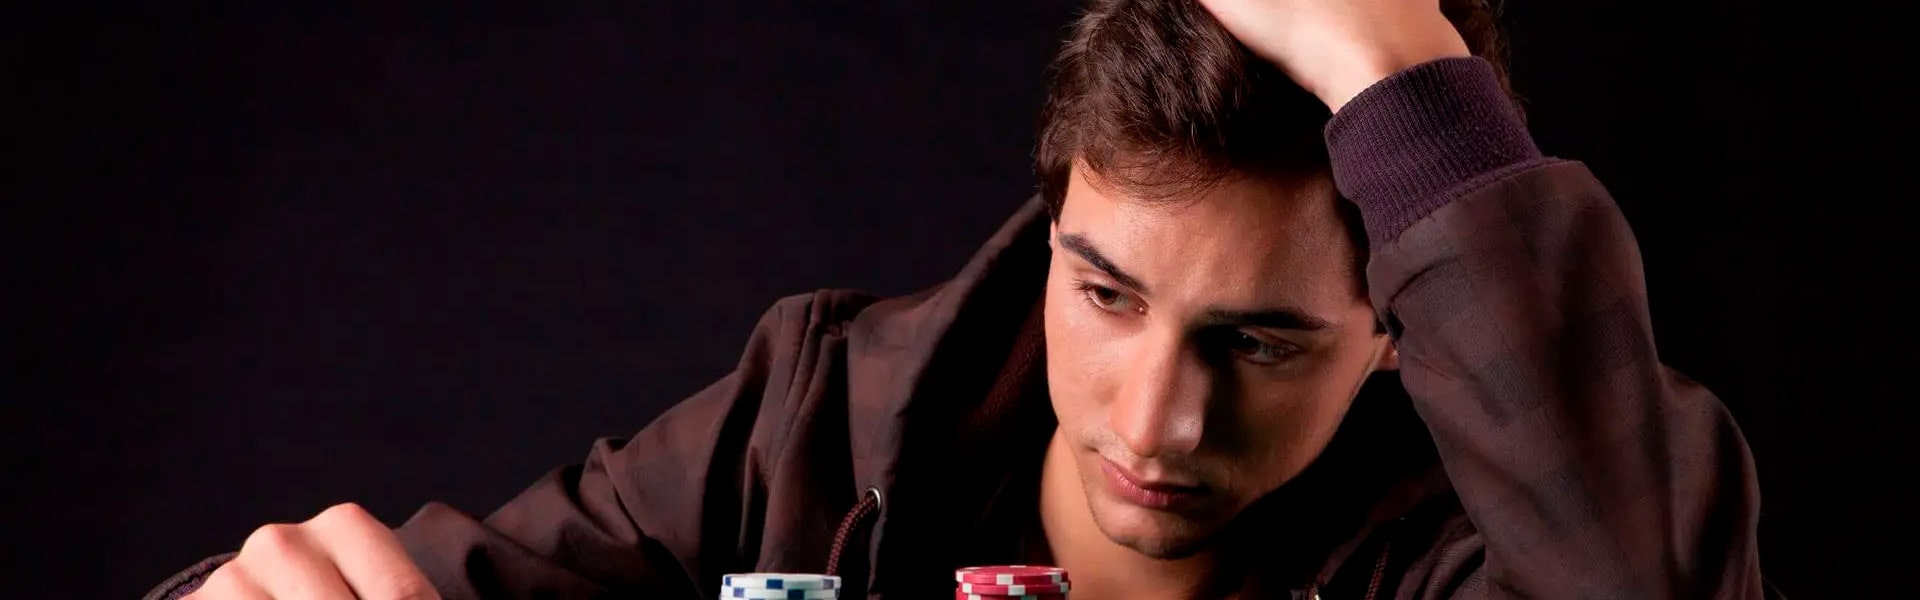 Что такое покер фейс: когда используется, можно ли натренировать